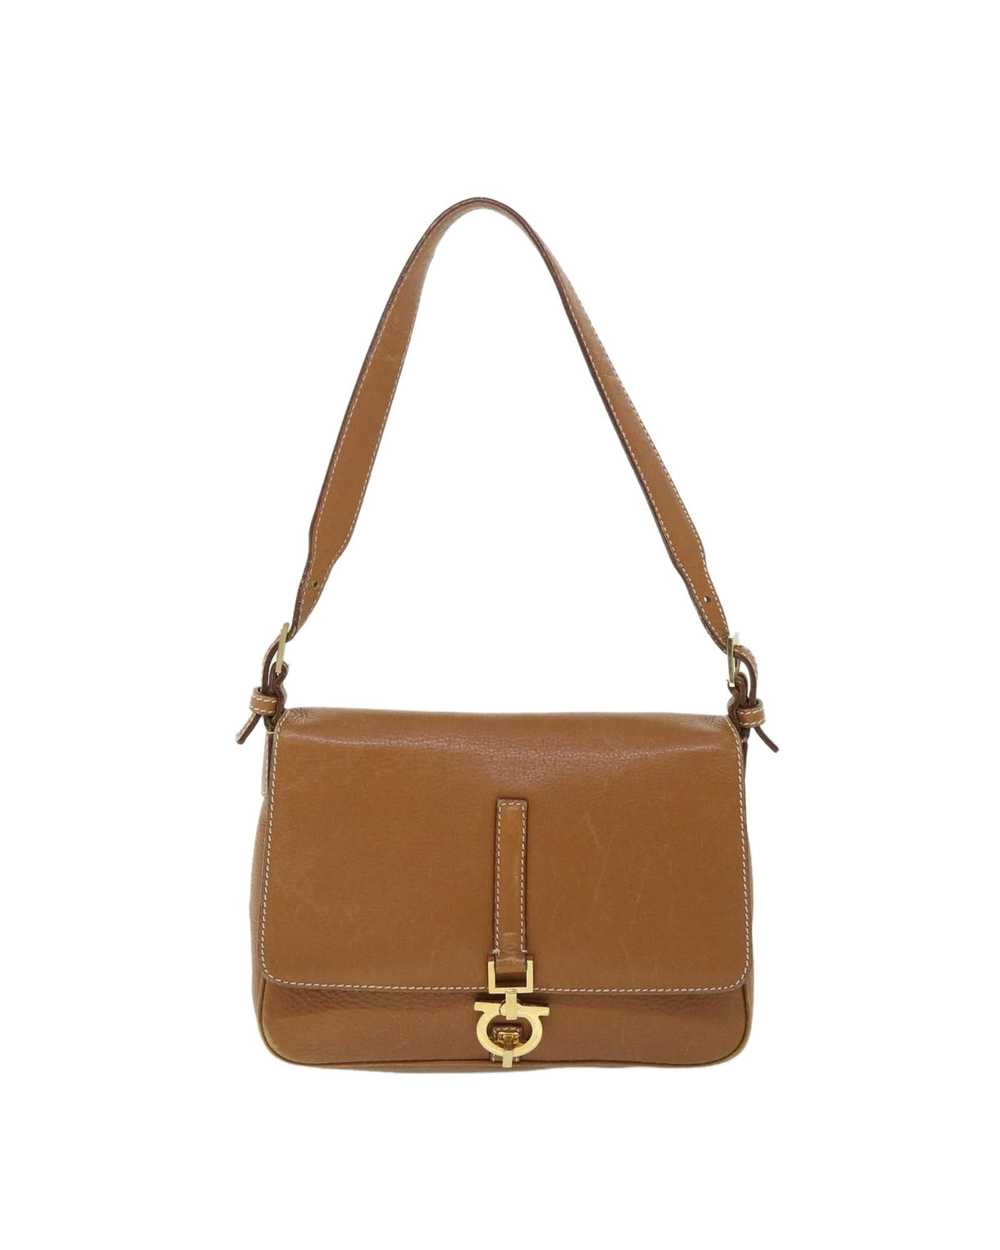 Salvatore Ferragamo Elegant Brown Leather Bag - image 2